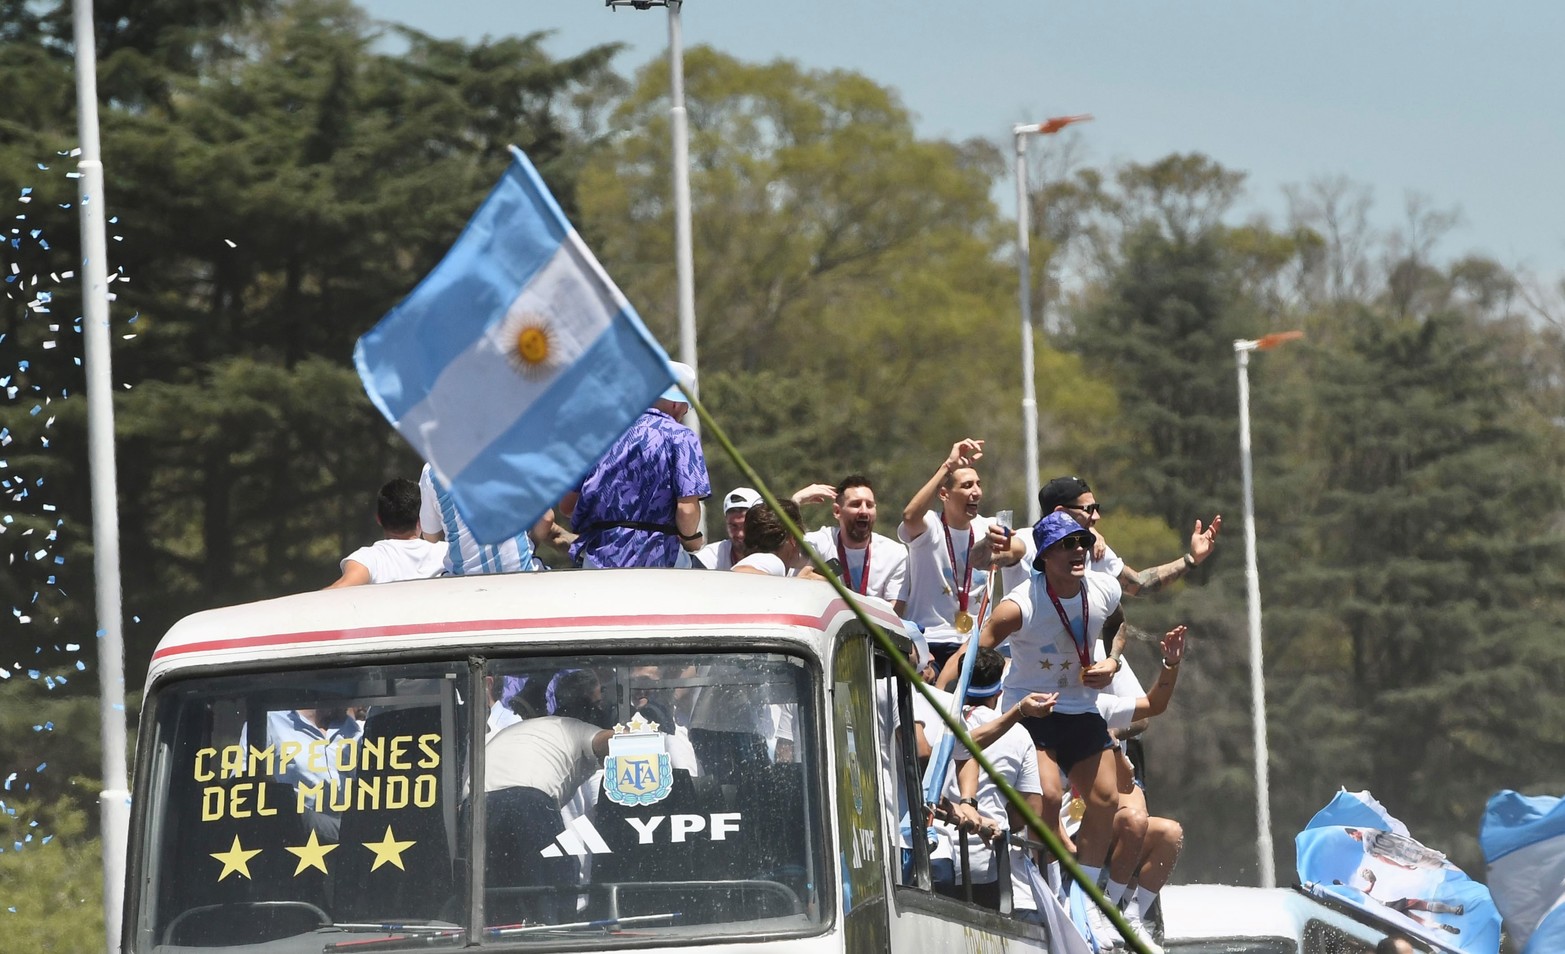 El colectivo que lleva a la Selección Argentina casi a paso de hombre por la multitud. Crédito: Gustavo Amarelle / Télam